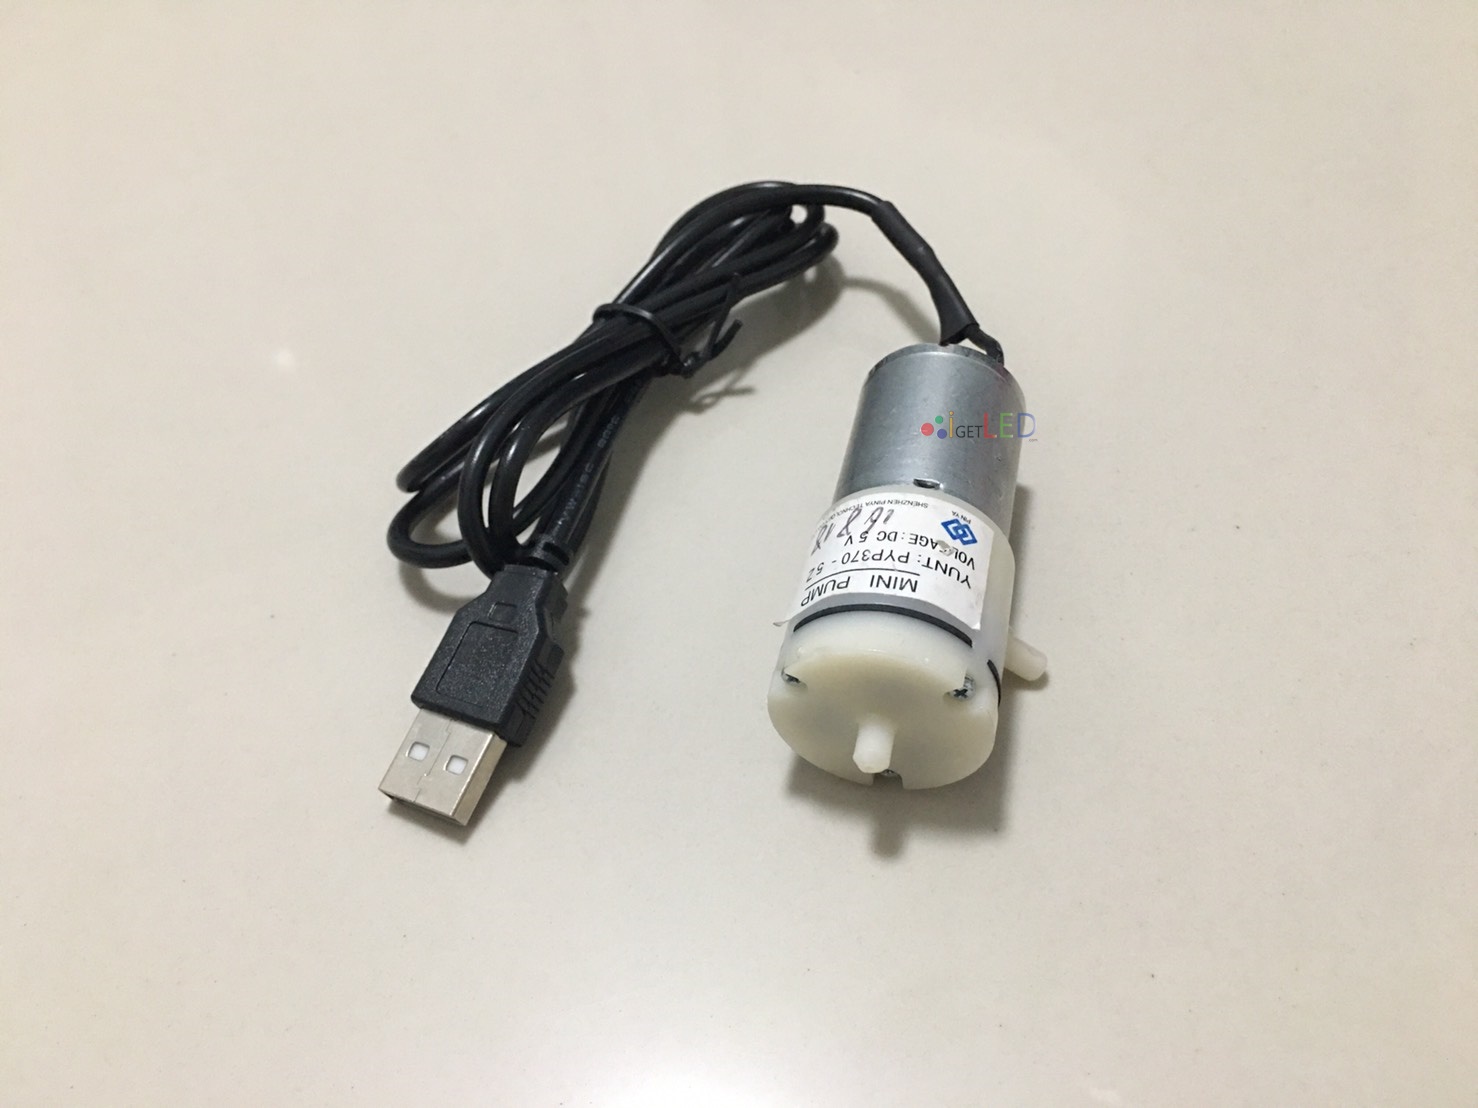 พร้อมสาย USB ปั๊มลม ดูด และ เป่า มินิปั้ม 3-6V DC Mini Pump Vacuum ปั๊มสูญญากาศ 6V 6 V 6 VDC 6VDC ปั้มตู้ปลาขนาดพกพา ปั้มปลูกผักไฮโดรโปนิก ใช้กับสายยาง 3/5มม.